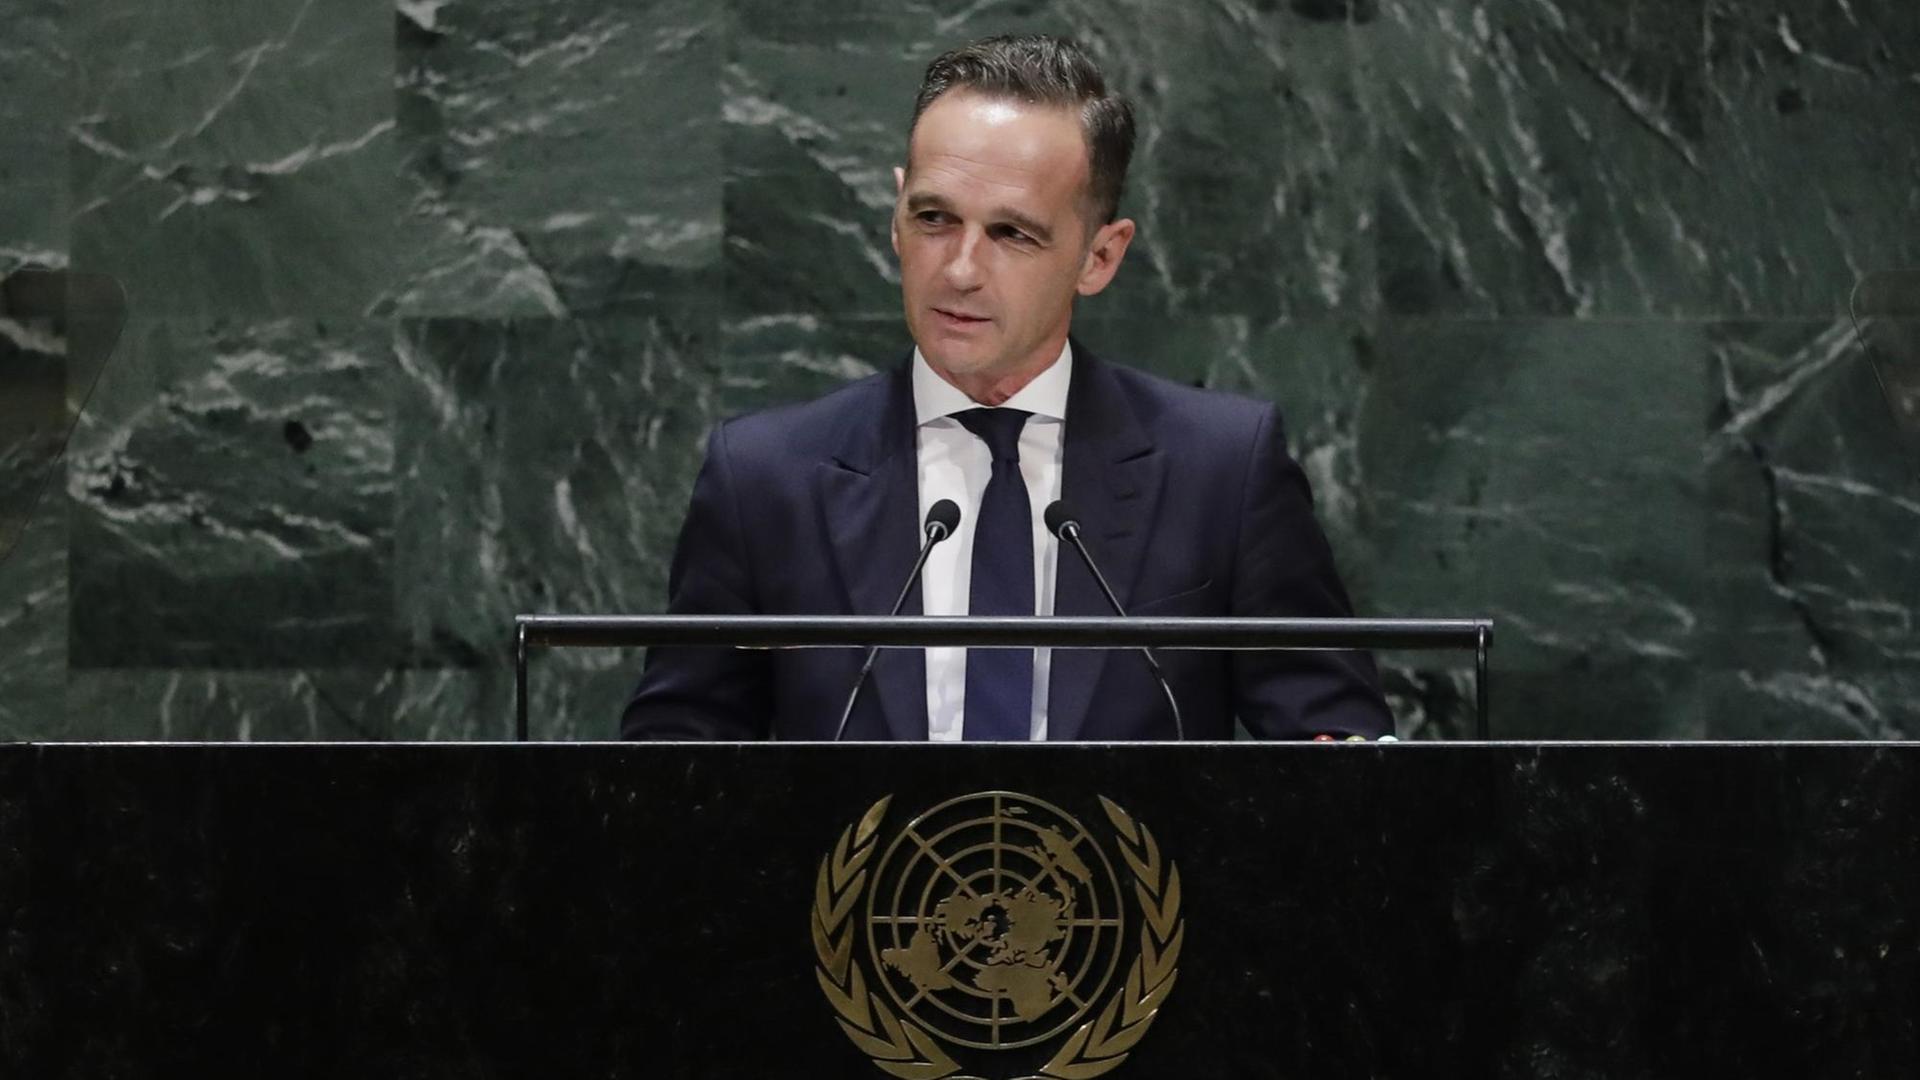 Maas steht mit leichtem Lächeln am Rednerpult vor der Marmorwand des UNO-Präsidiums und spricht in zwei Mikrofone. Er trägt einen dunkelblauen Anzug.